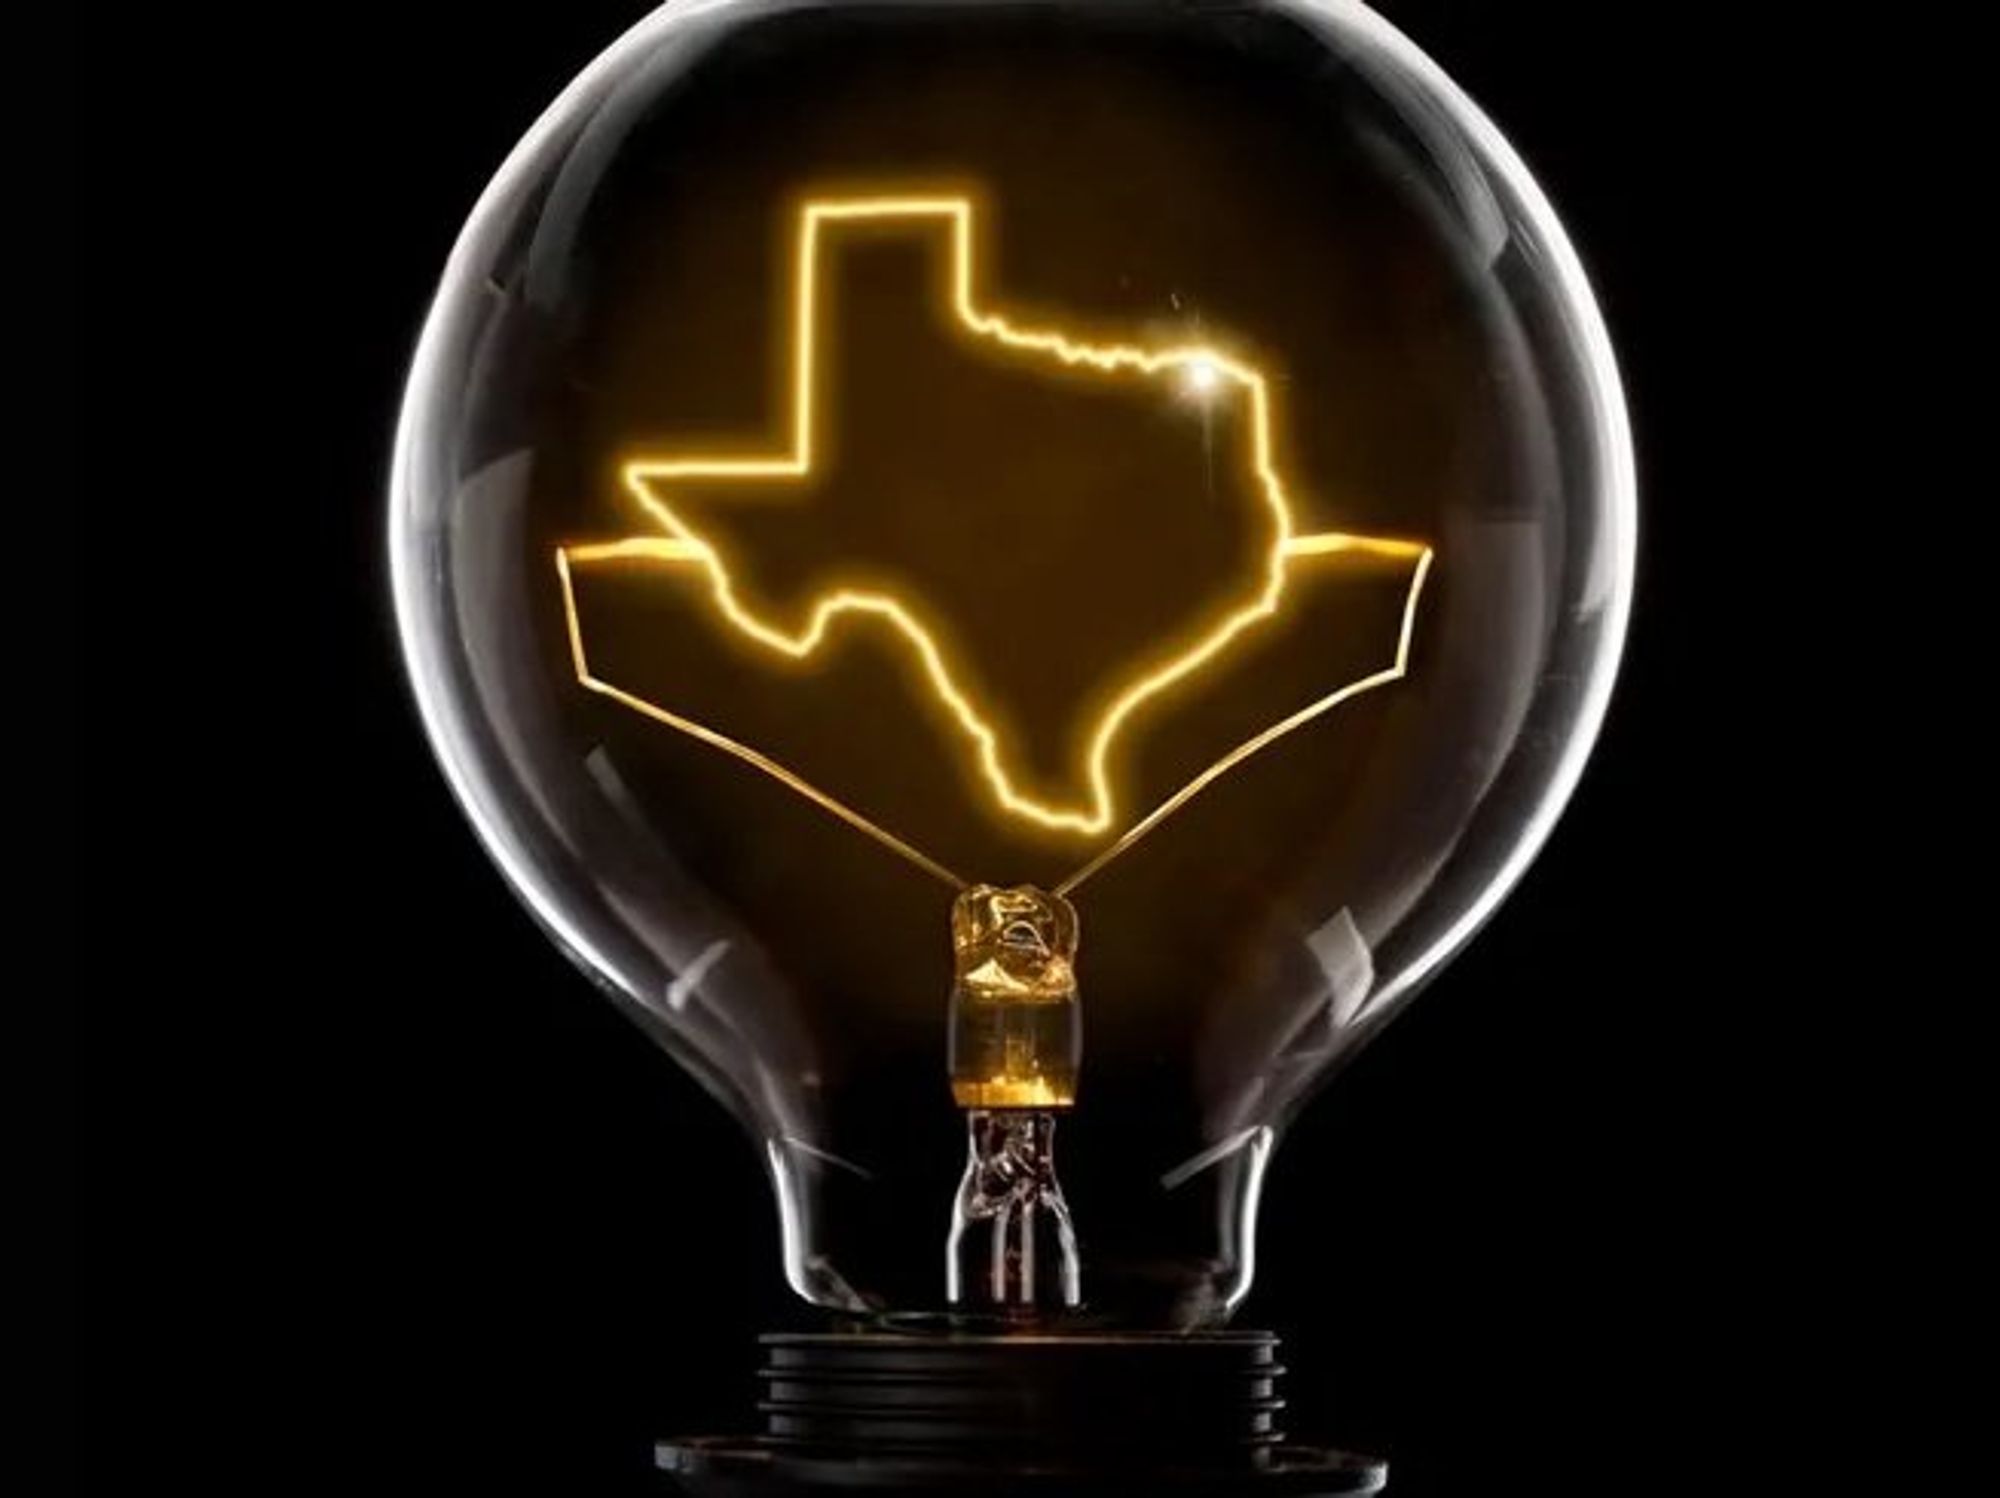 Texas innovation